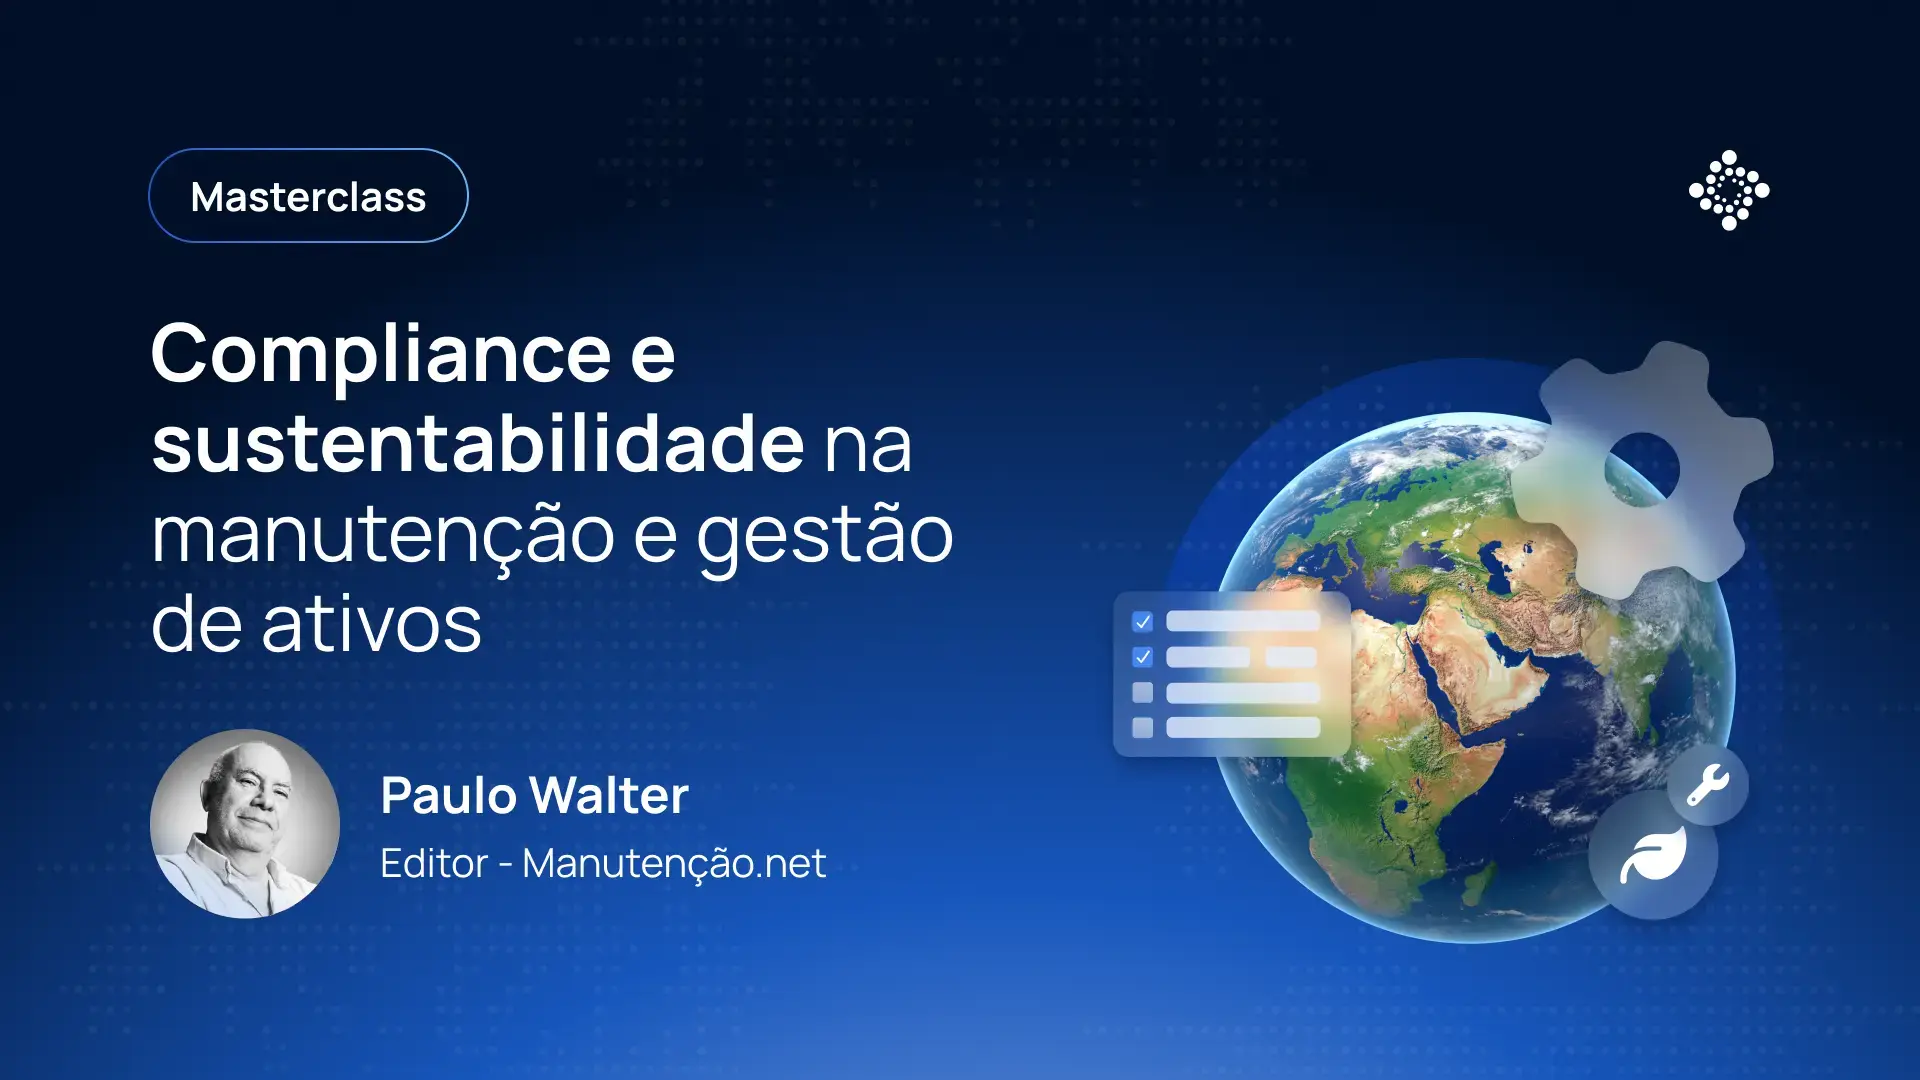 Masterclass: Compliance e sustentabilidade na manutenção e gestão de ativos - Paulo Walter